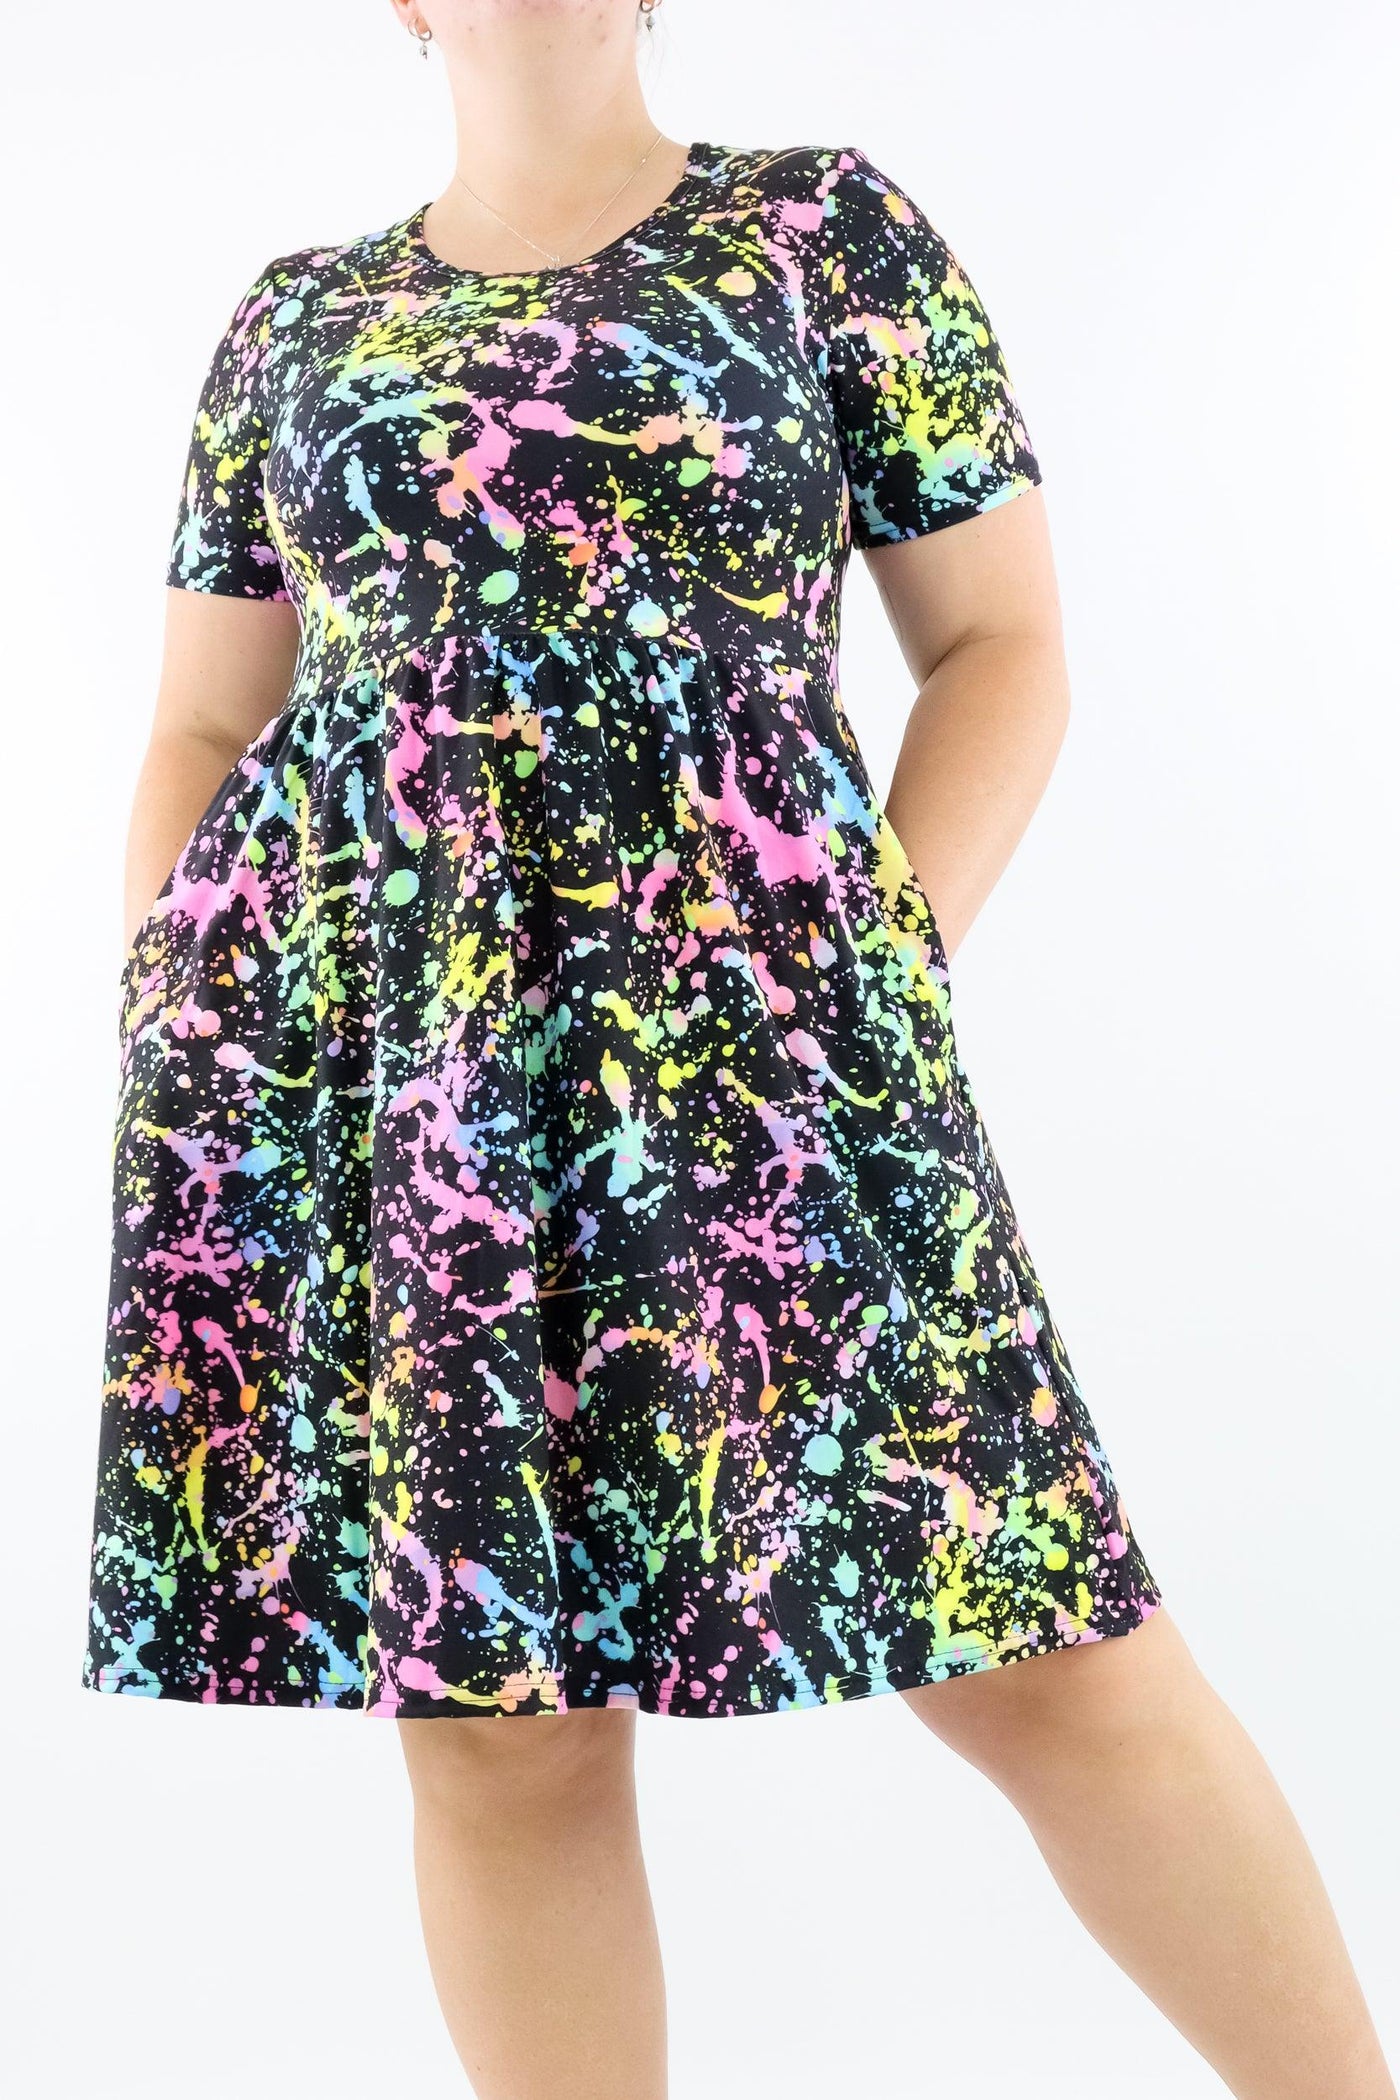 Neon Splash - Short Sleeve Skater Dress - Knee Length - Side Pockets